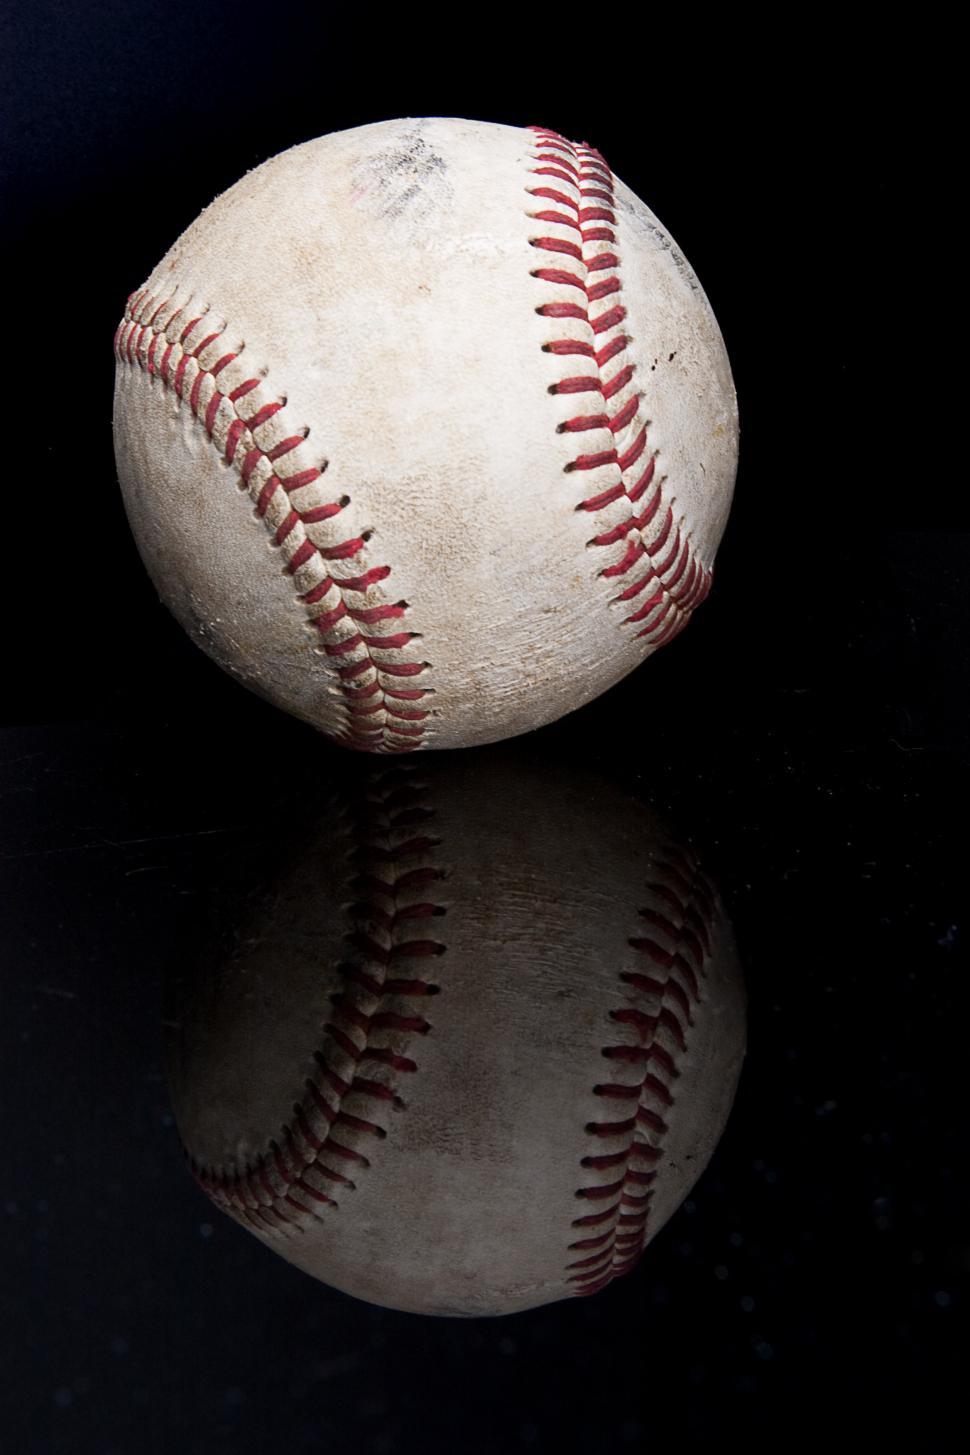 Free Image of Baseball on Black Surface 